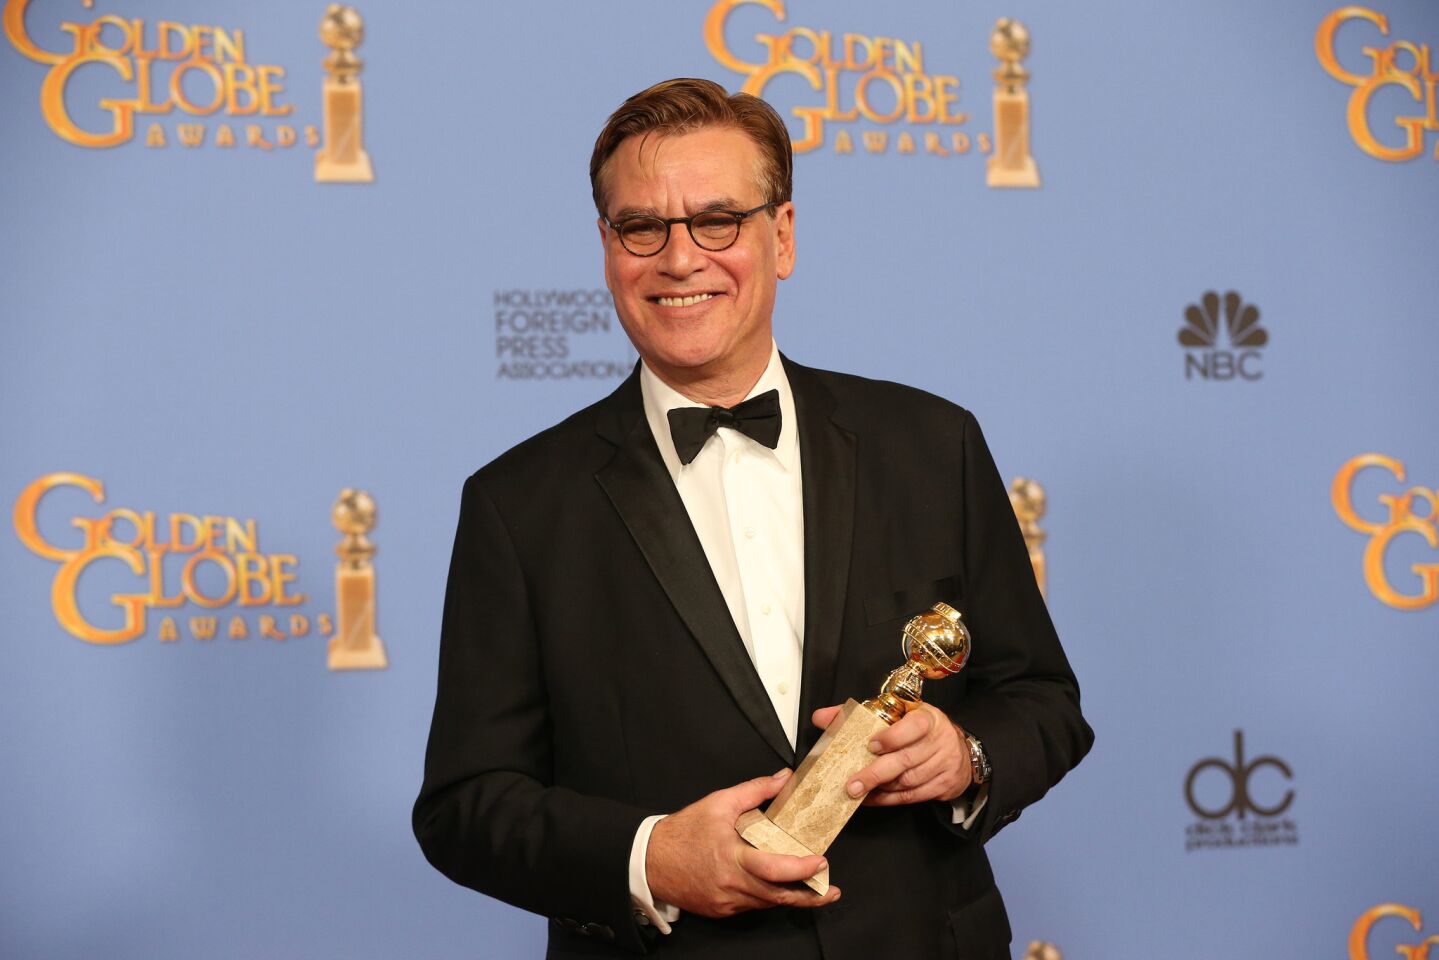 Aaron Sorkin | Golden Globe